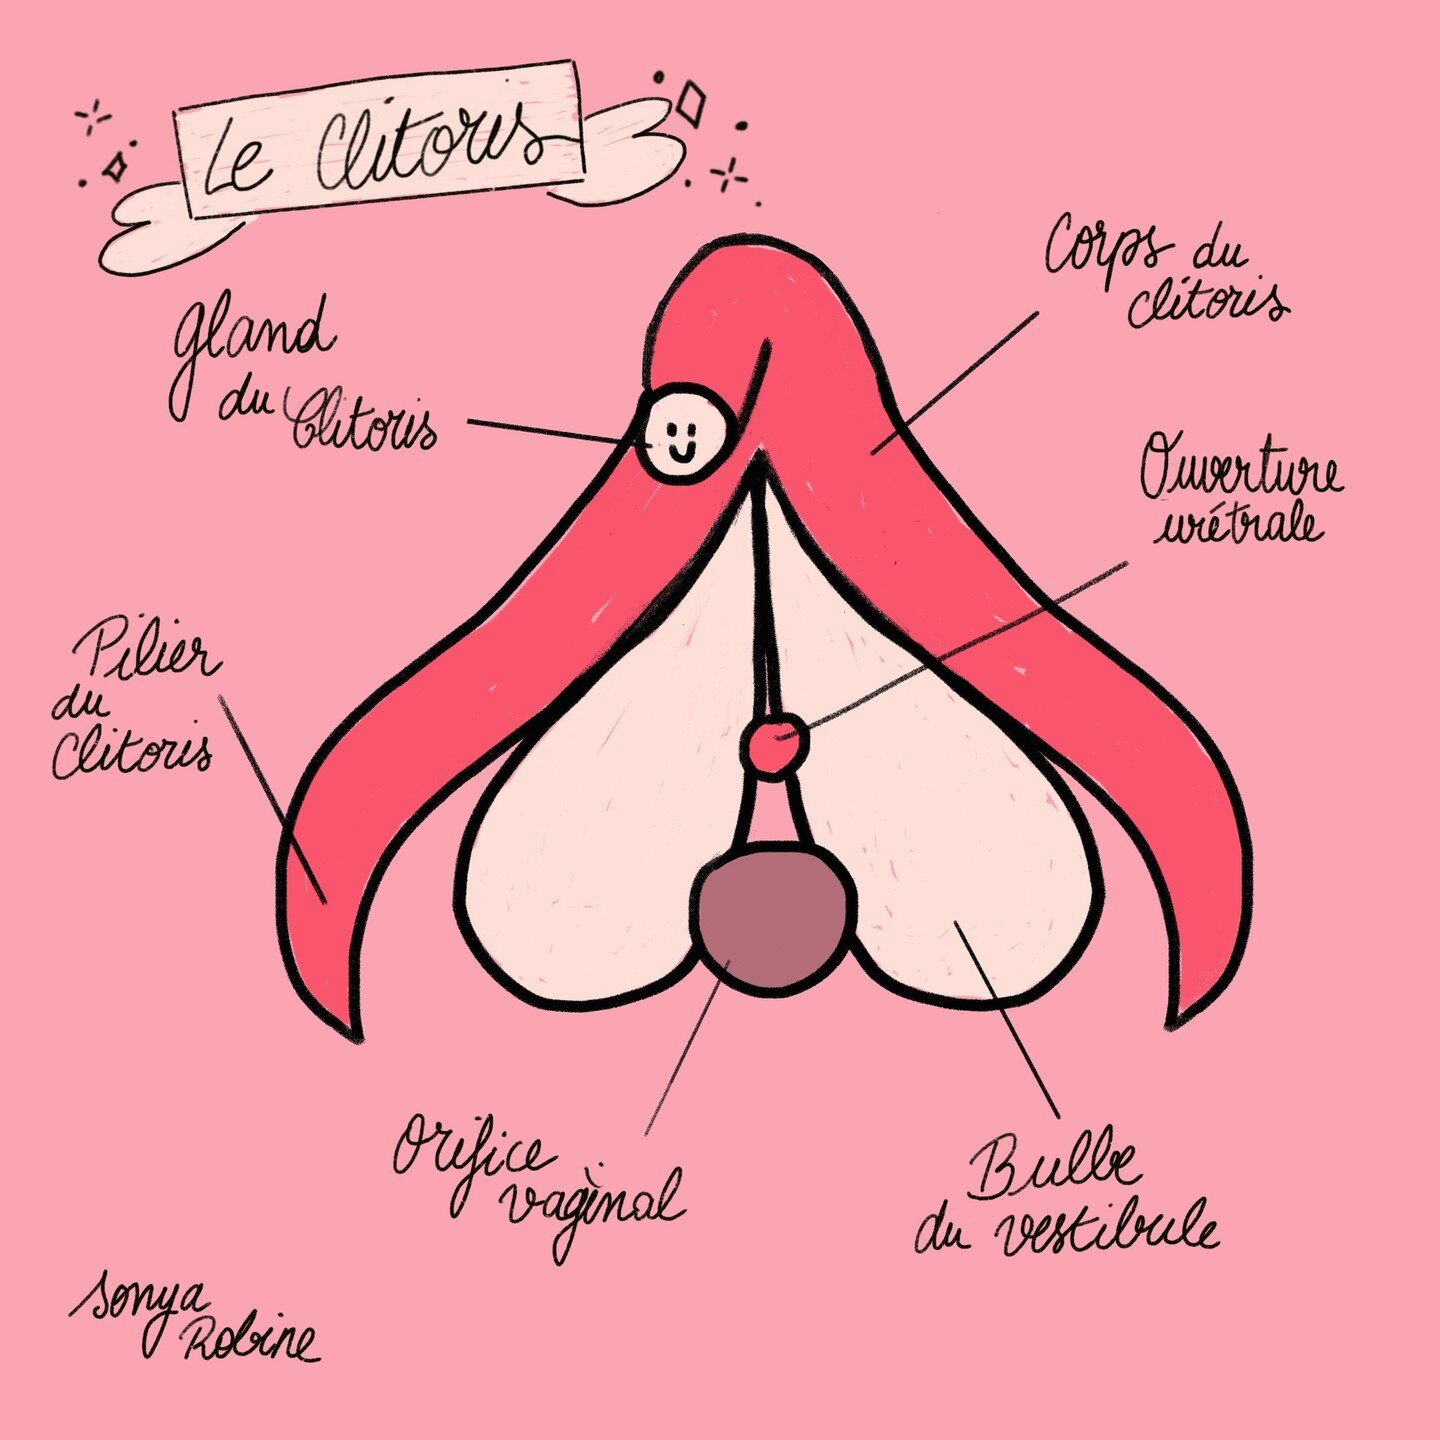 Anatomy of the clitoris! #feminism #clitorisday #clitoris